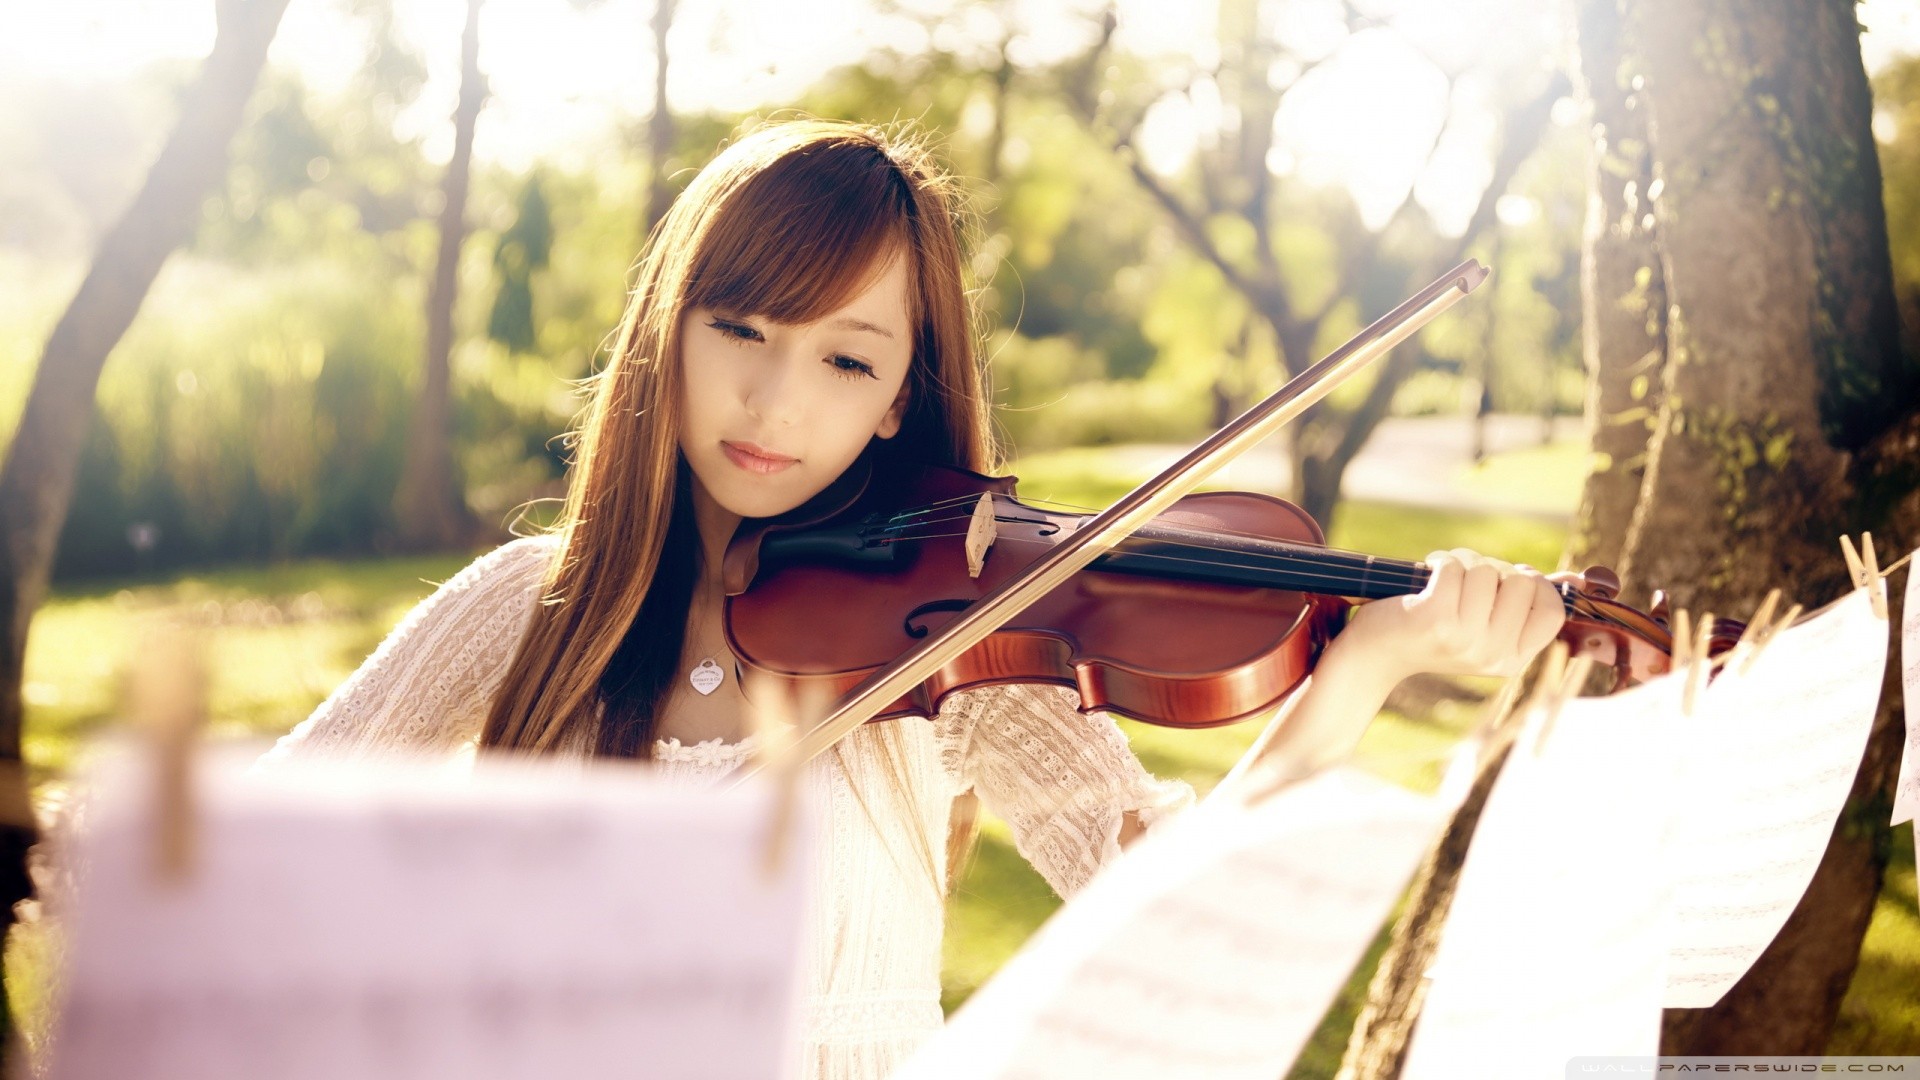 Women Asian Brunette Long Hair Focused White Tops Violin Musician 1920x1080